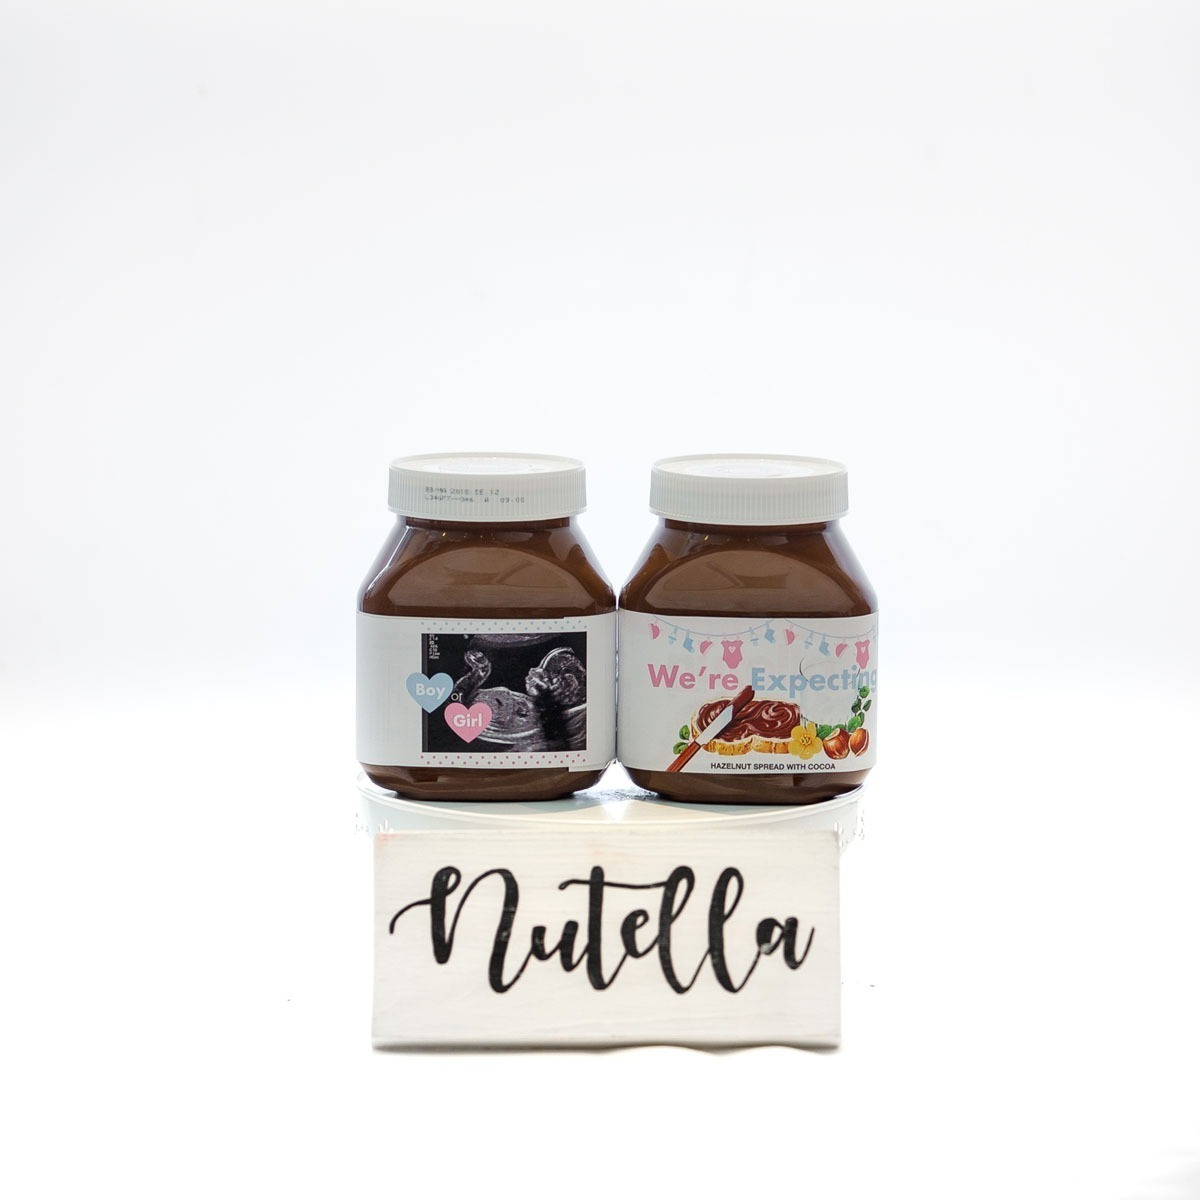 Panier Nutella  Événements et cadeaux Dolce Anna Inc.